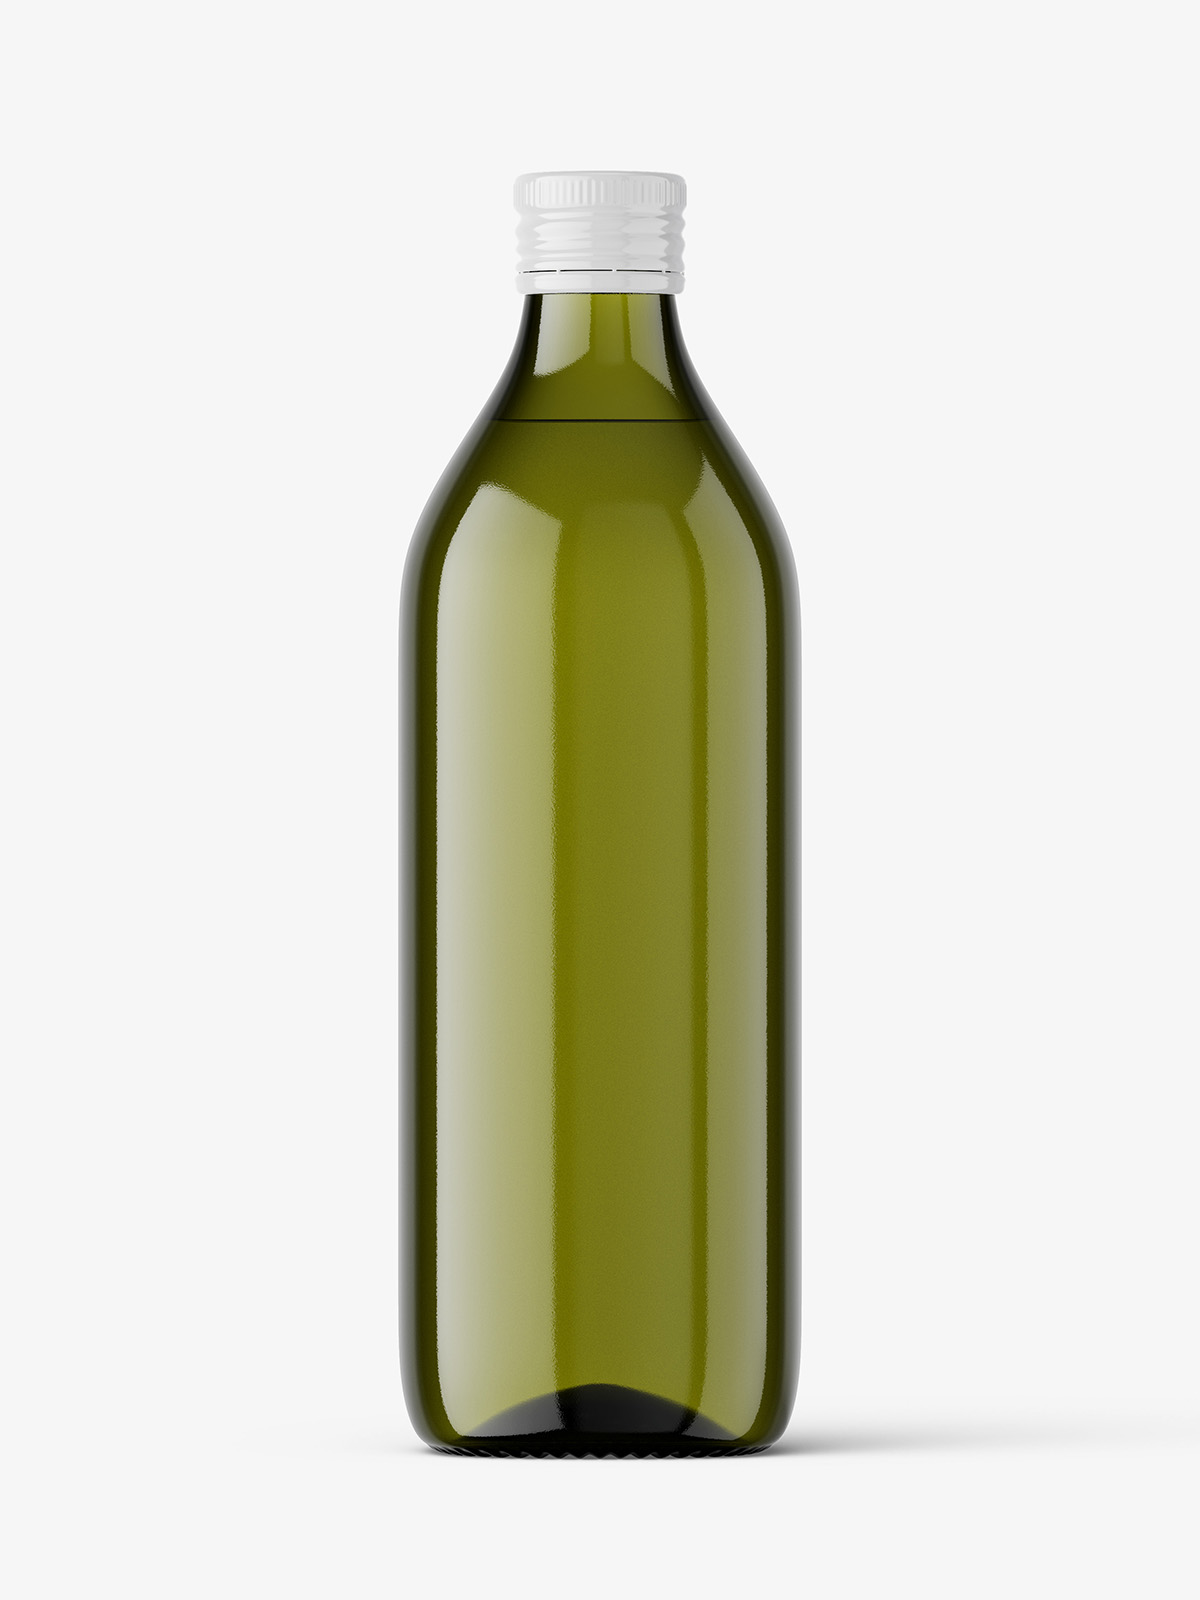 https://smartymockups.com/wp-content/uploads/2020/10/Olive_Oil_Bottle_Mockup_1-1.jpg